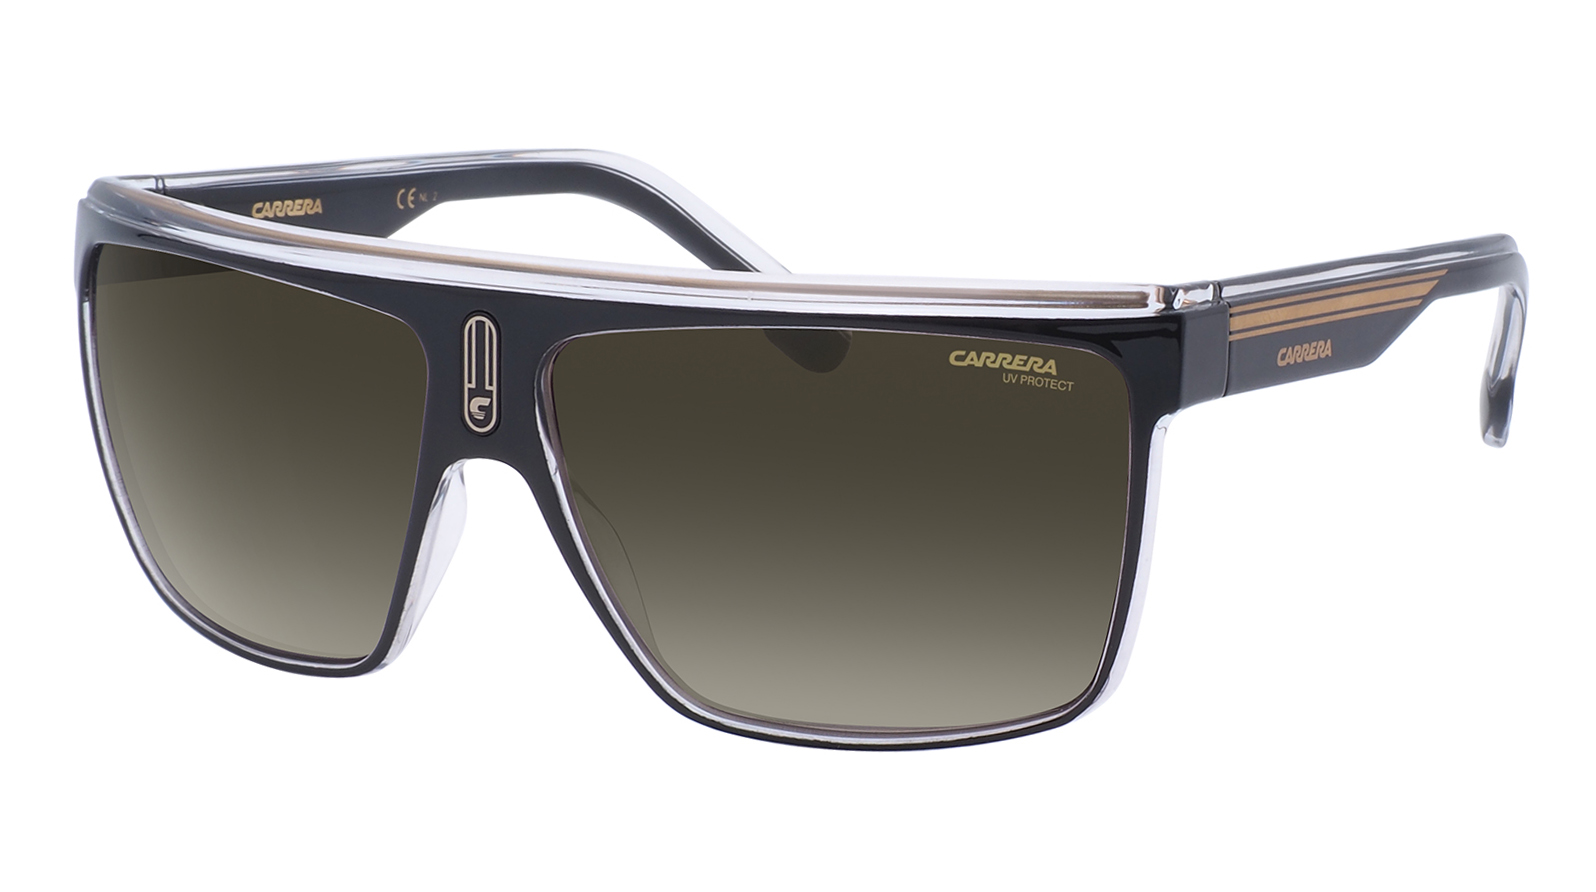 Carrera 22-N 2M2 fasion стиль открытый унисекс спортивные очки солнцезащитные очки лыжи смола защита uv400 велоспорт велосипедные очки